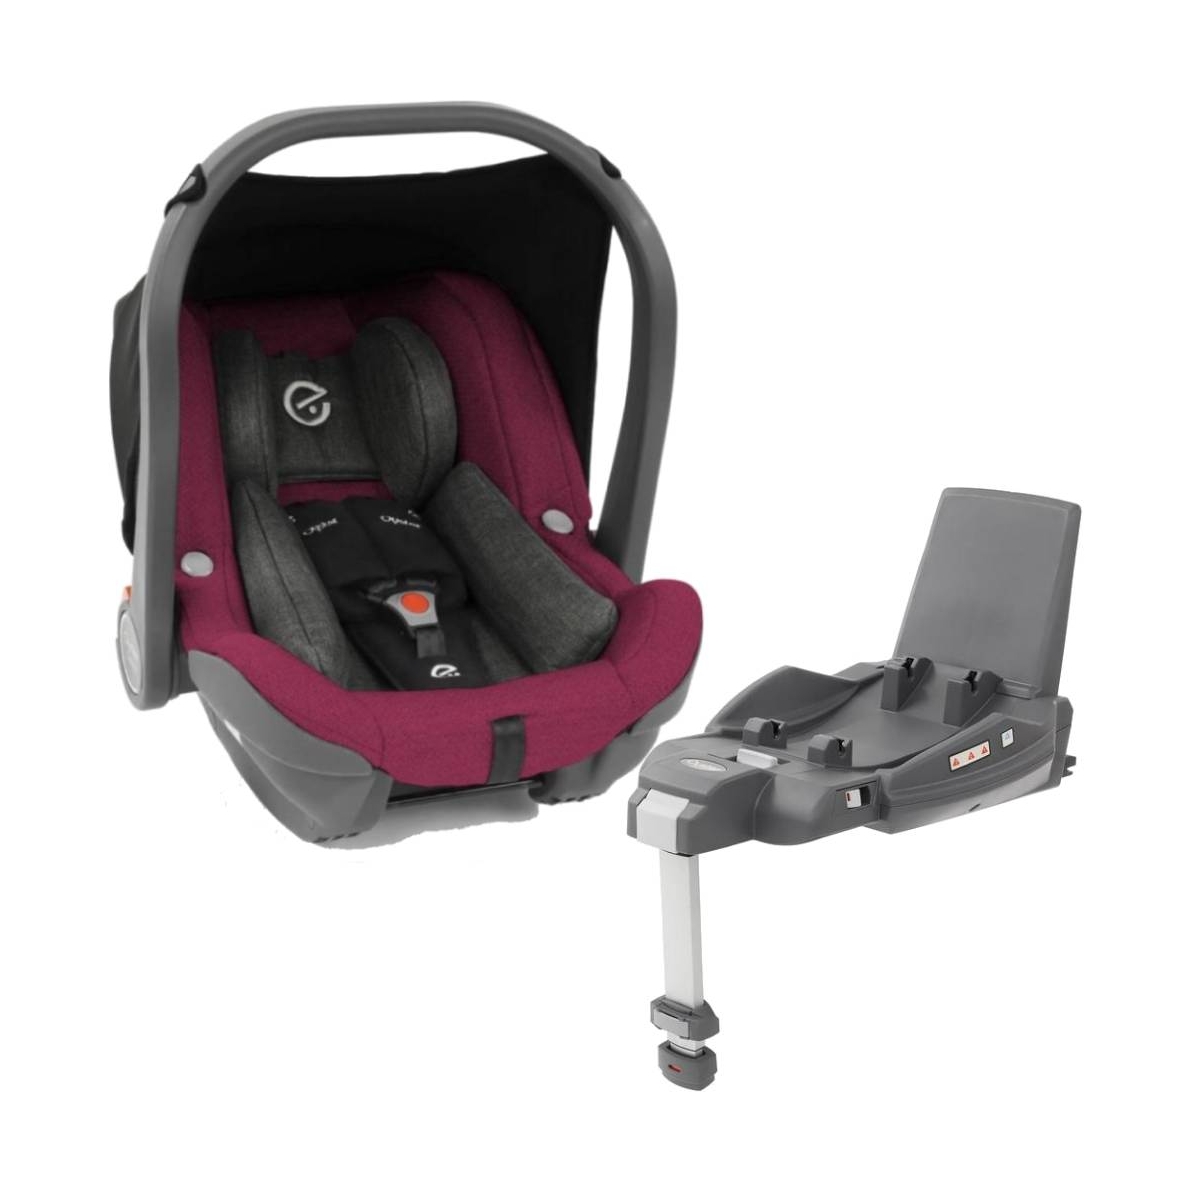 Babystyle Capsule Infant Car Seat & Duofix i-Size Base